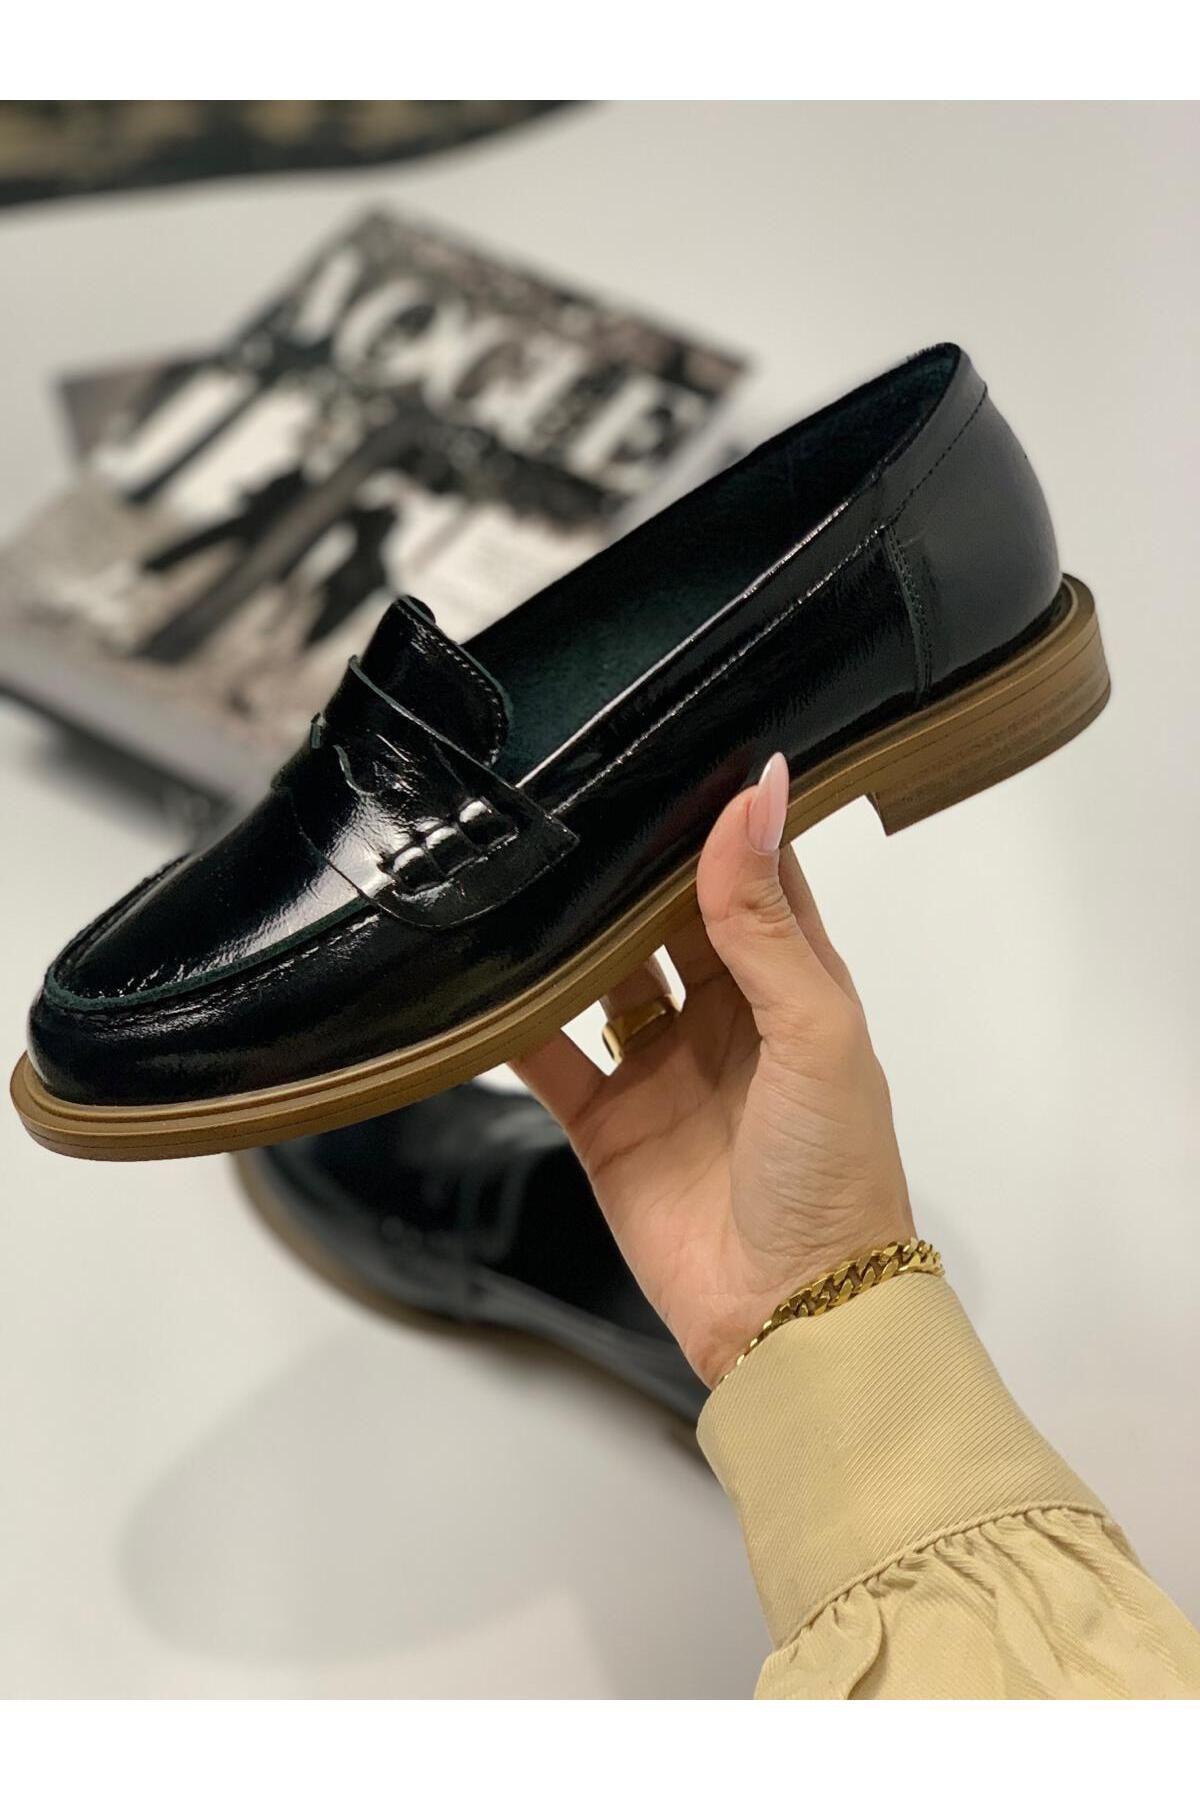 FNG Store İçi Dışı Hakiki Deri Kadın Loafer Günlük Klasik Ayakkabı